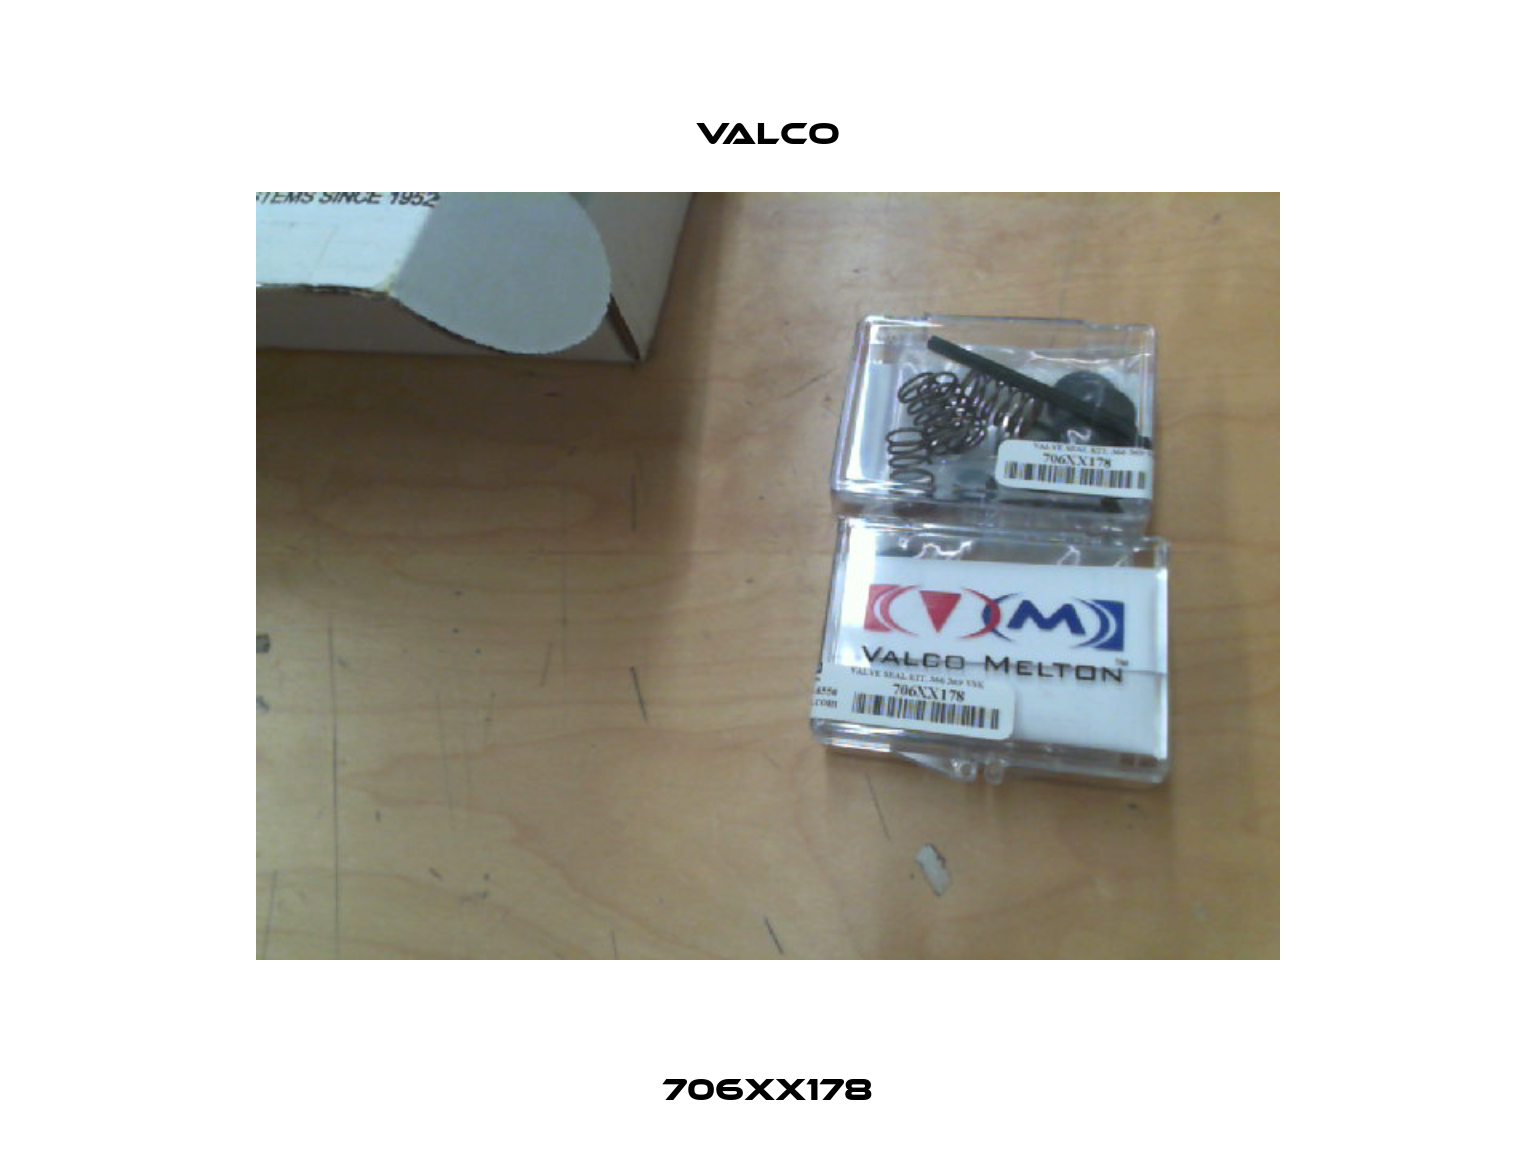 706XX178 Valco